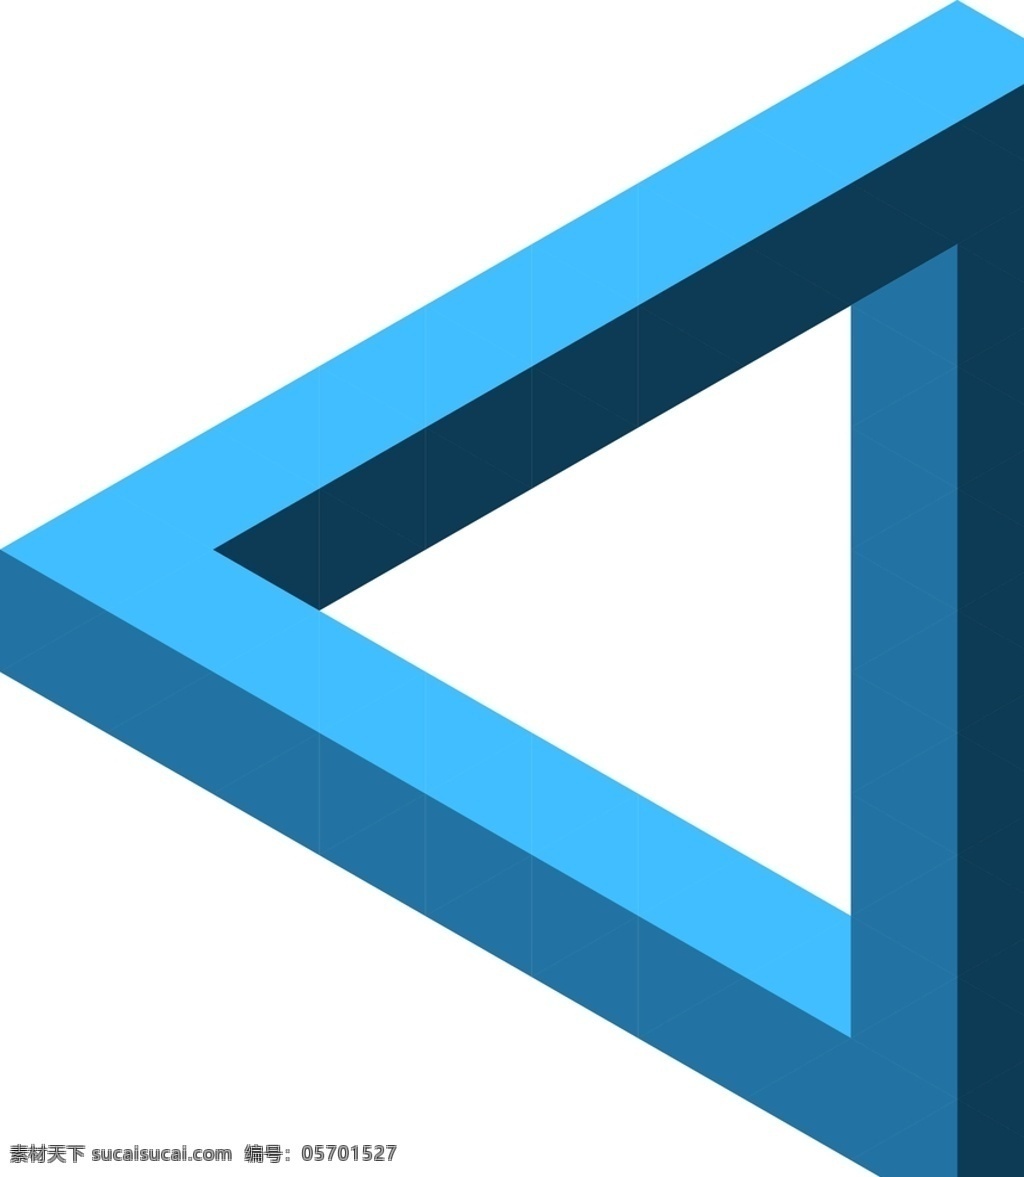 d 三角形 元素 蓝色 矛盾空间 立体